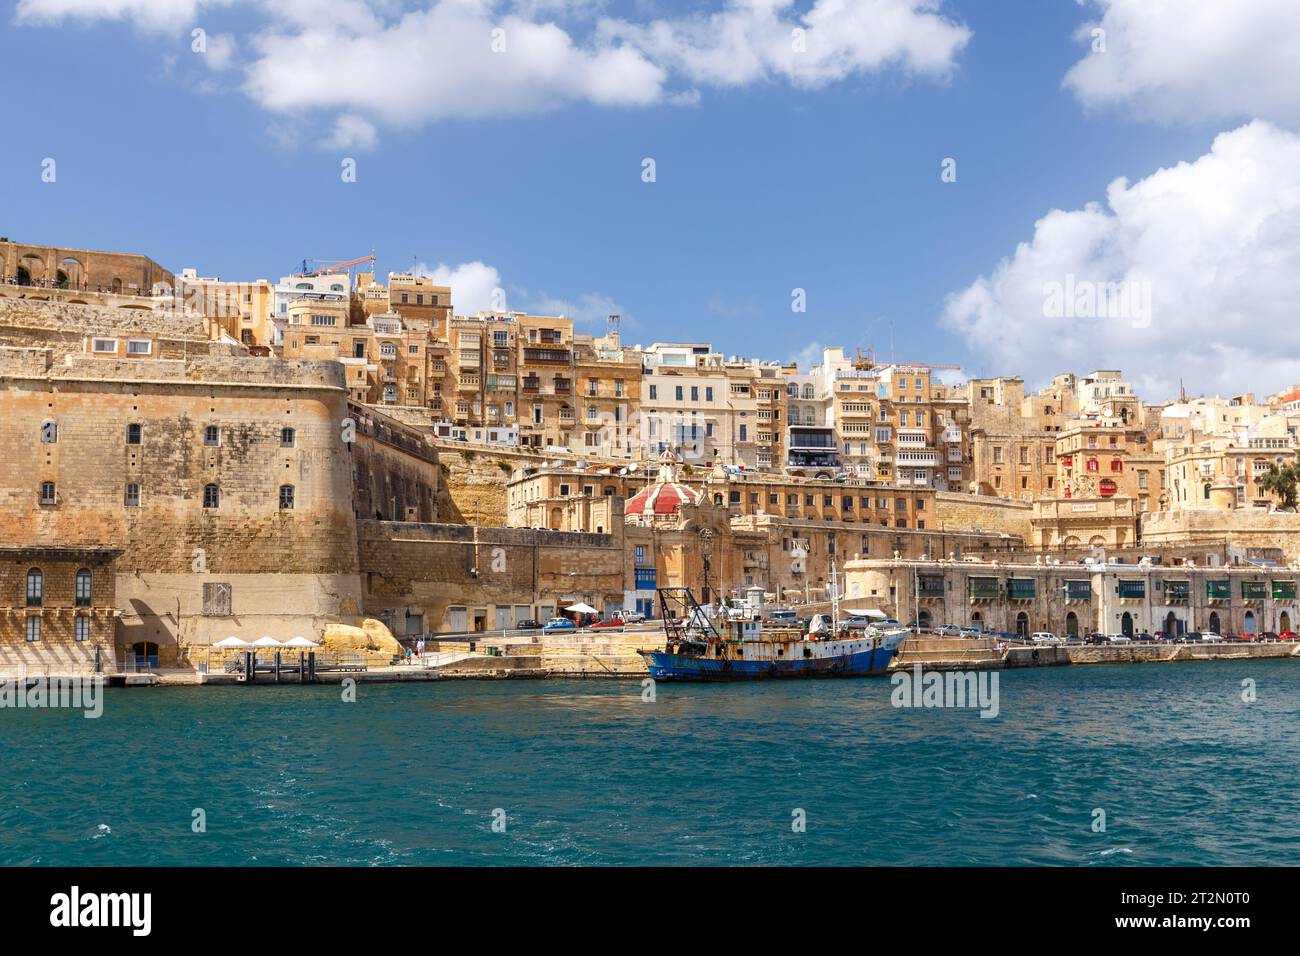 VALETTA, MALTA - SEPTEMBER 11, 2017: View of Valletta's Grand Harbor waterfront in September 2017. Stock Photo